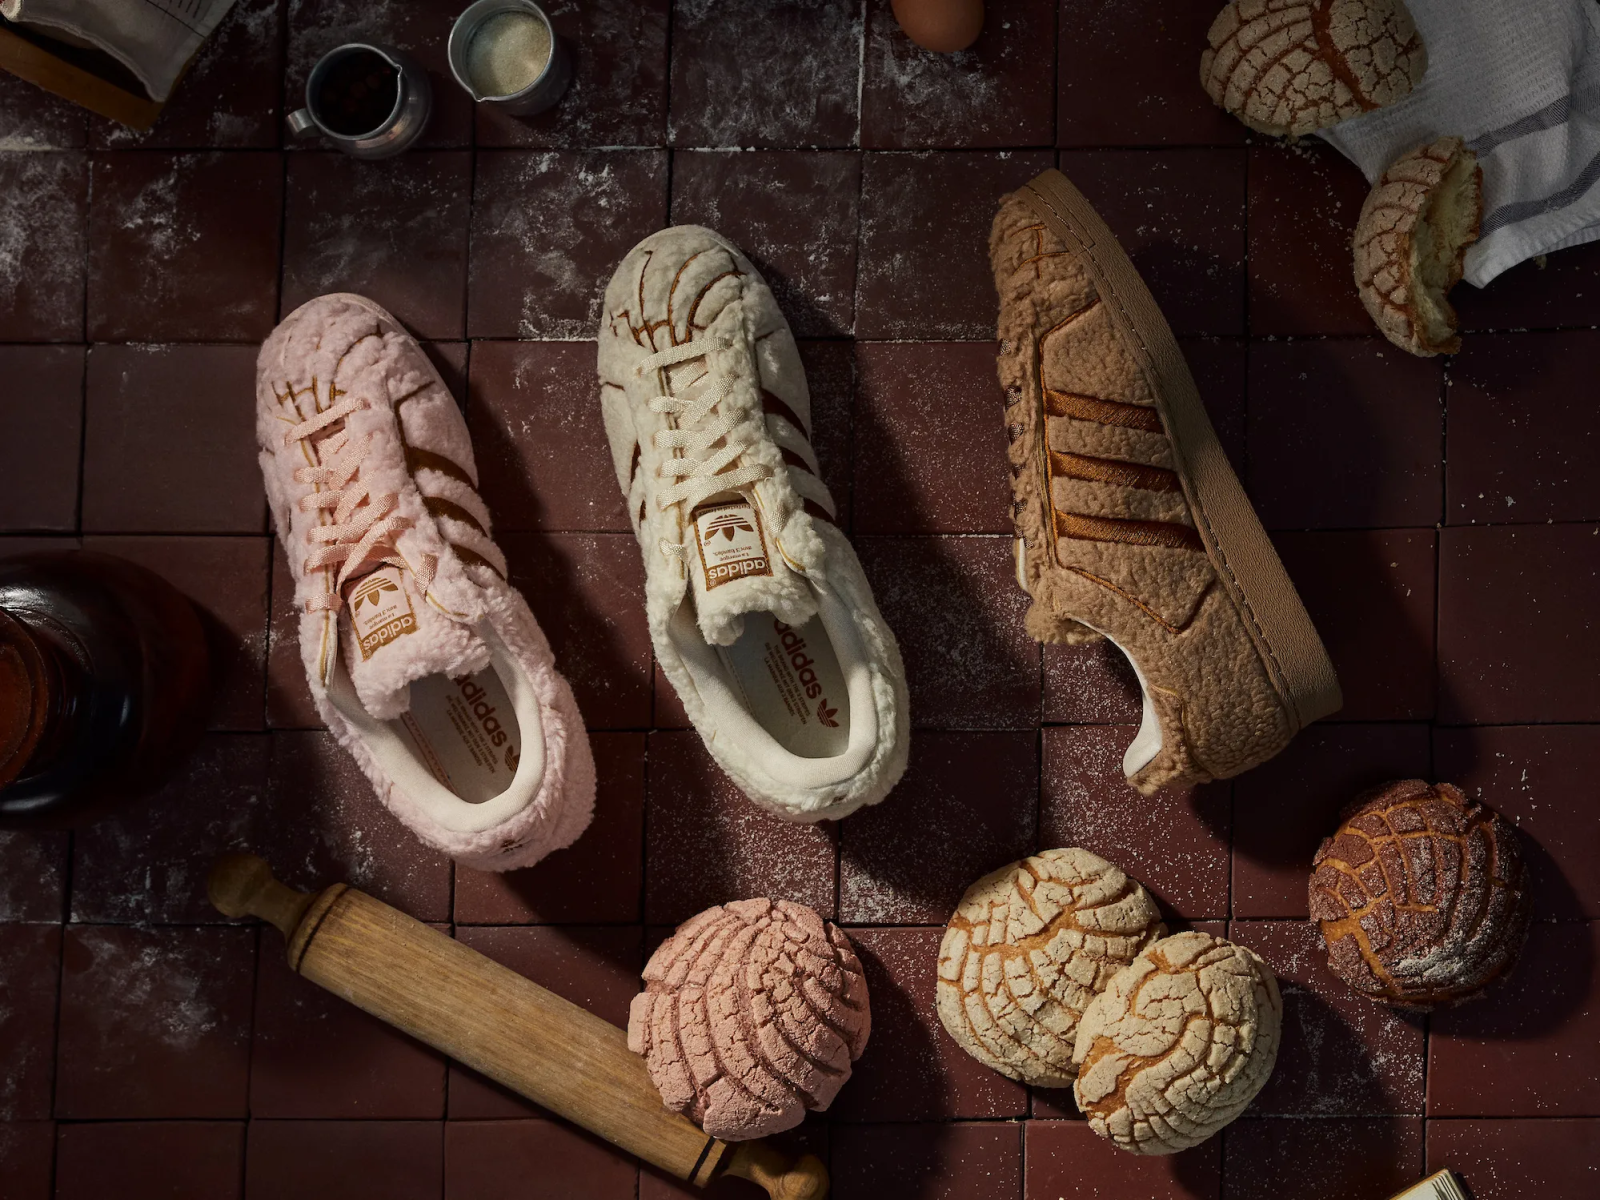 Una fusión de moda y gastronomía: Adidas lanza zapatos inspirados en pan dulce